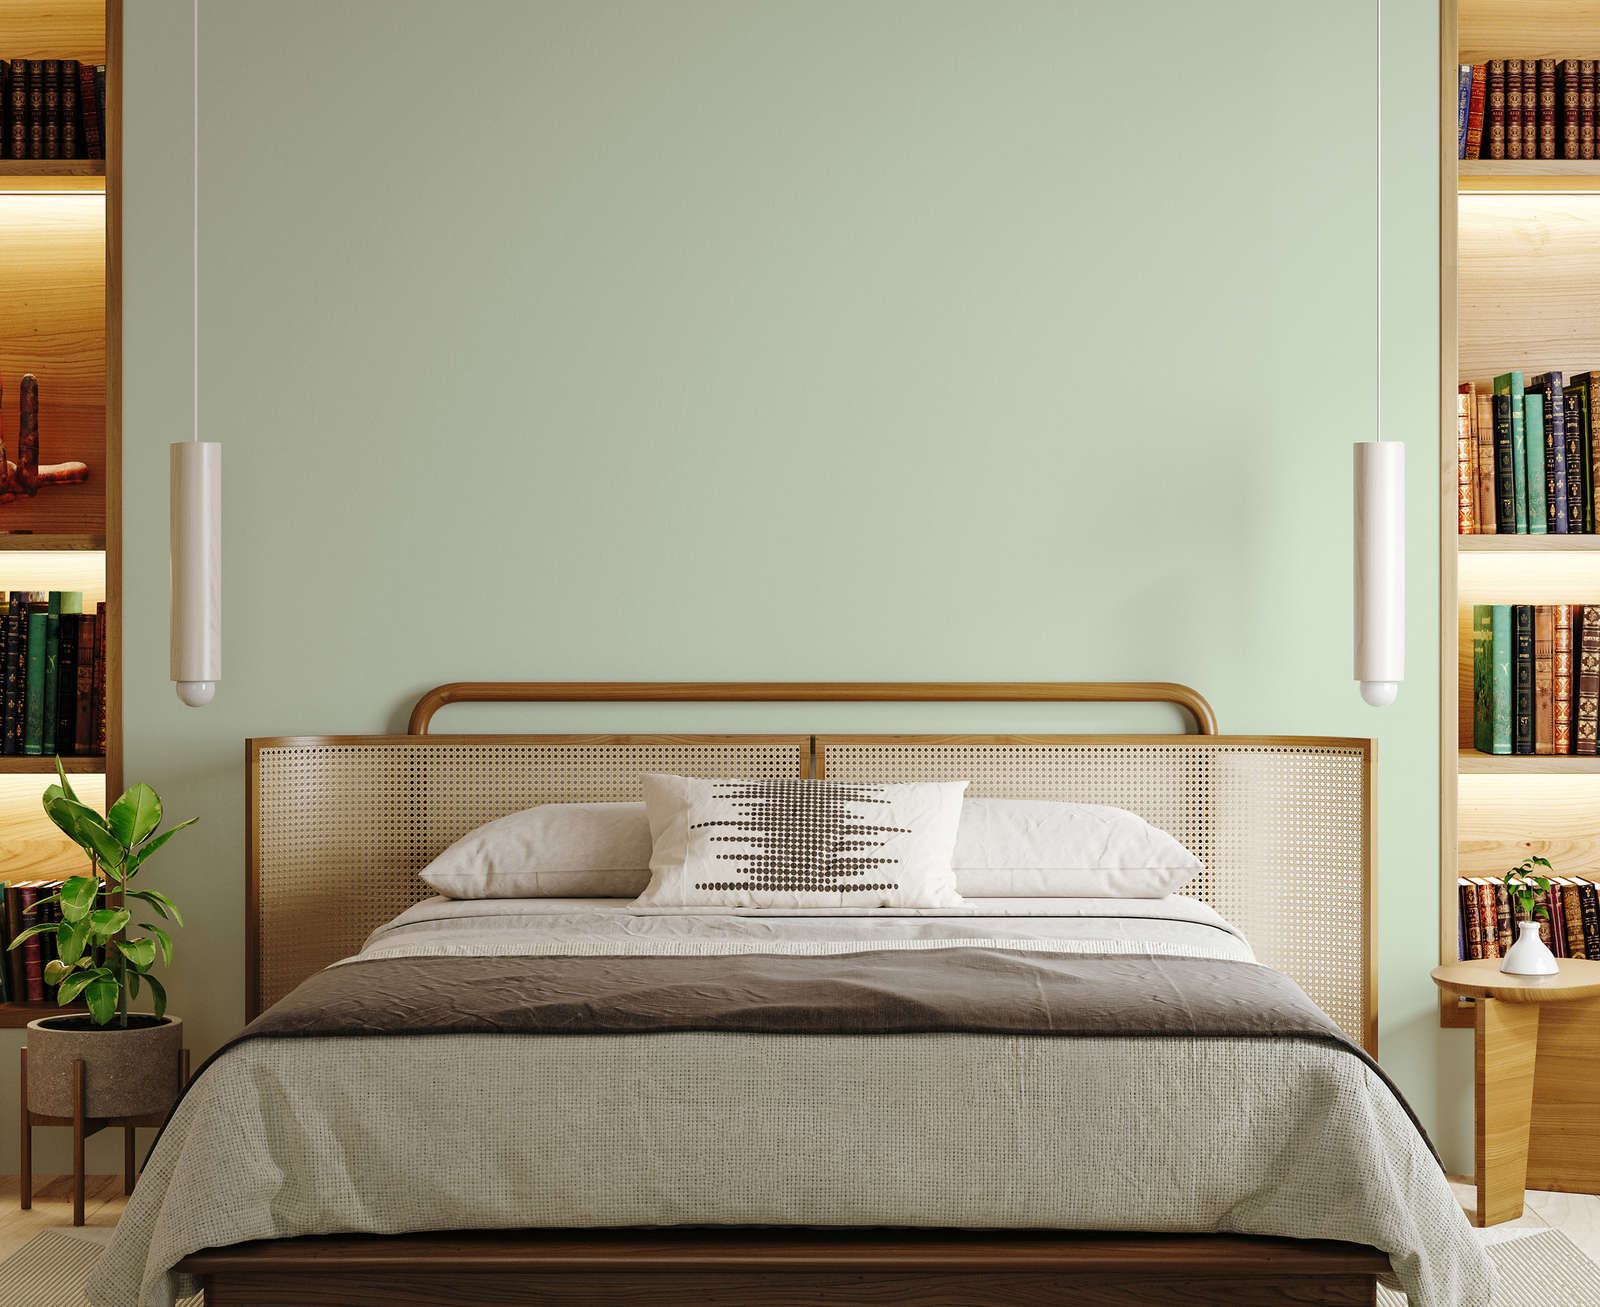             Premium Wall Paint Awakening Pastel Green »Sweet Sage« NW400 – 5 litre
        